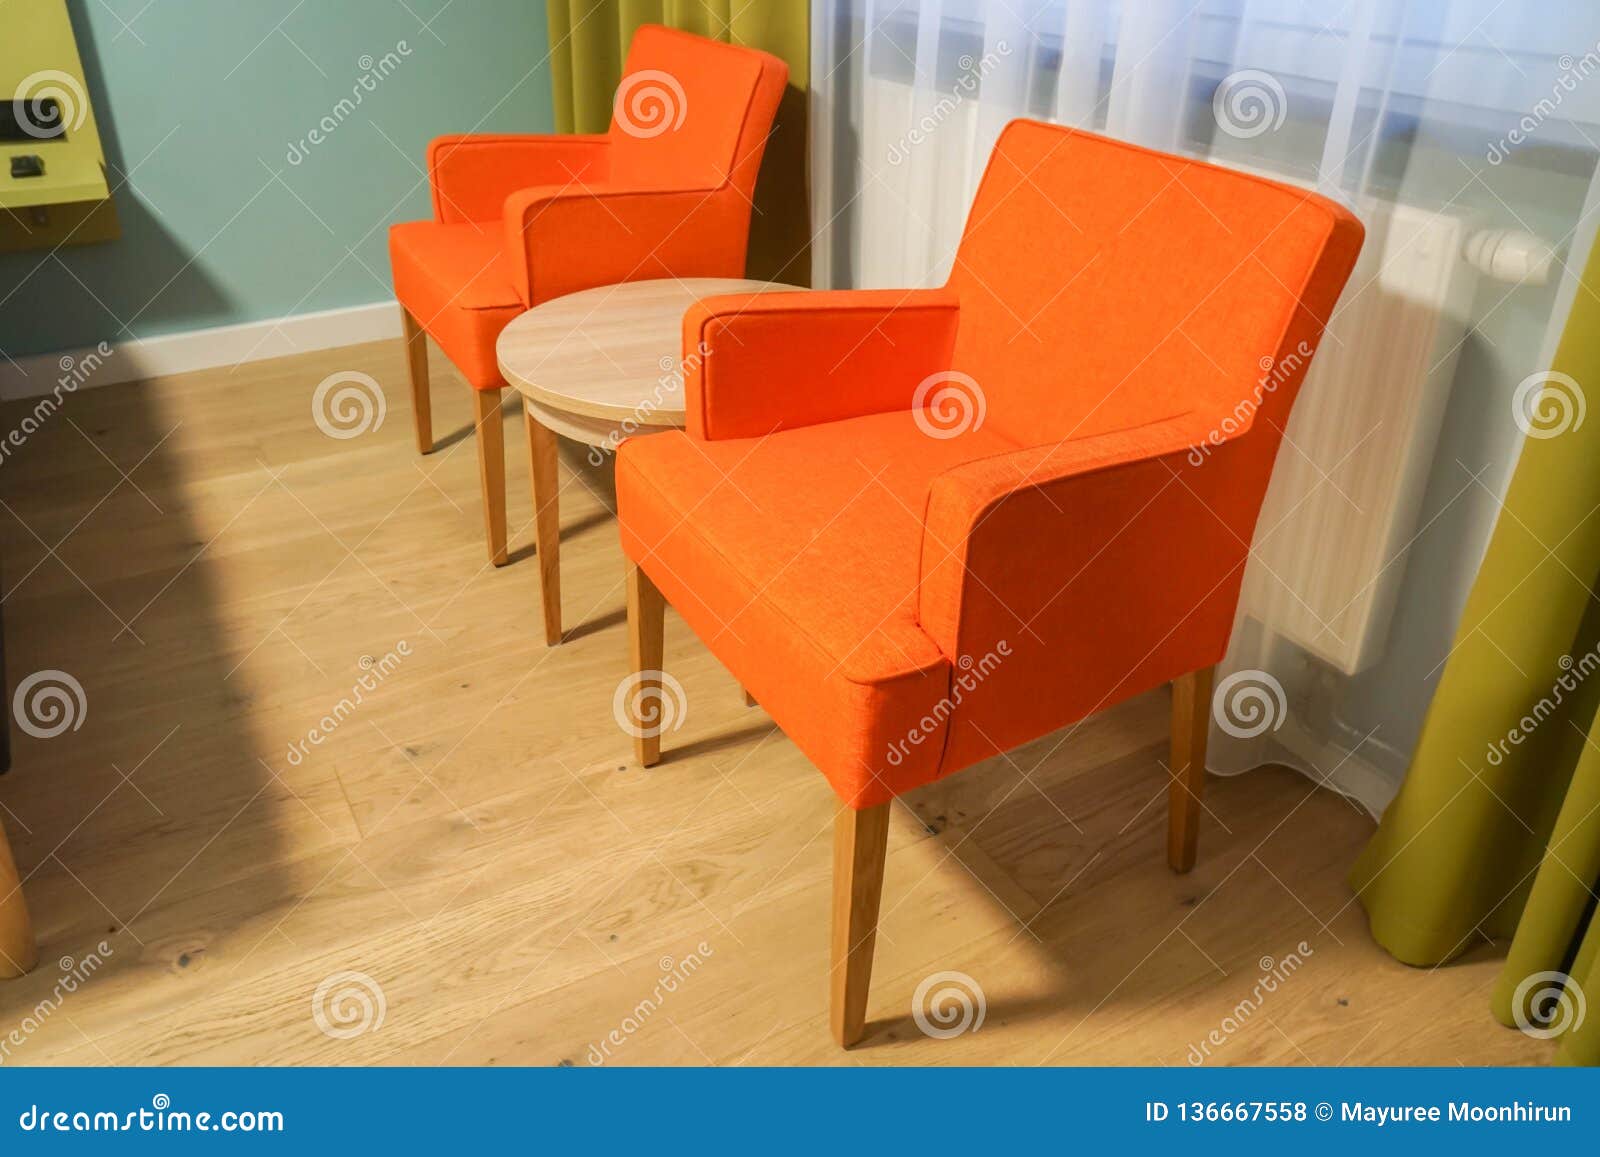 Fauteuil Orange Lumineux Dans La Chambre à Coucher D'hôtel Photo stock -  Image du maison, fauteuil: 136667558